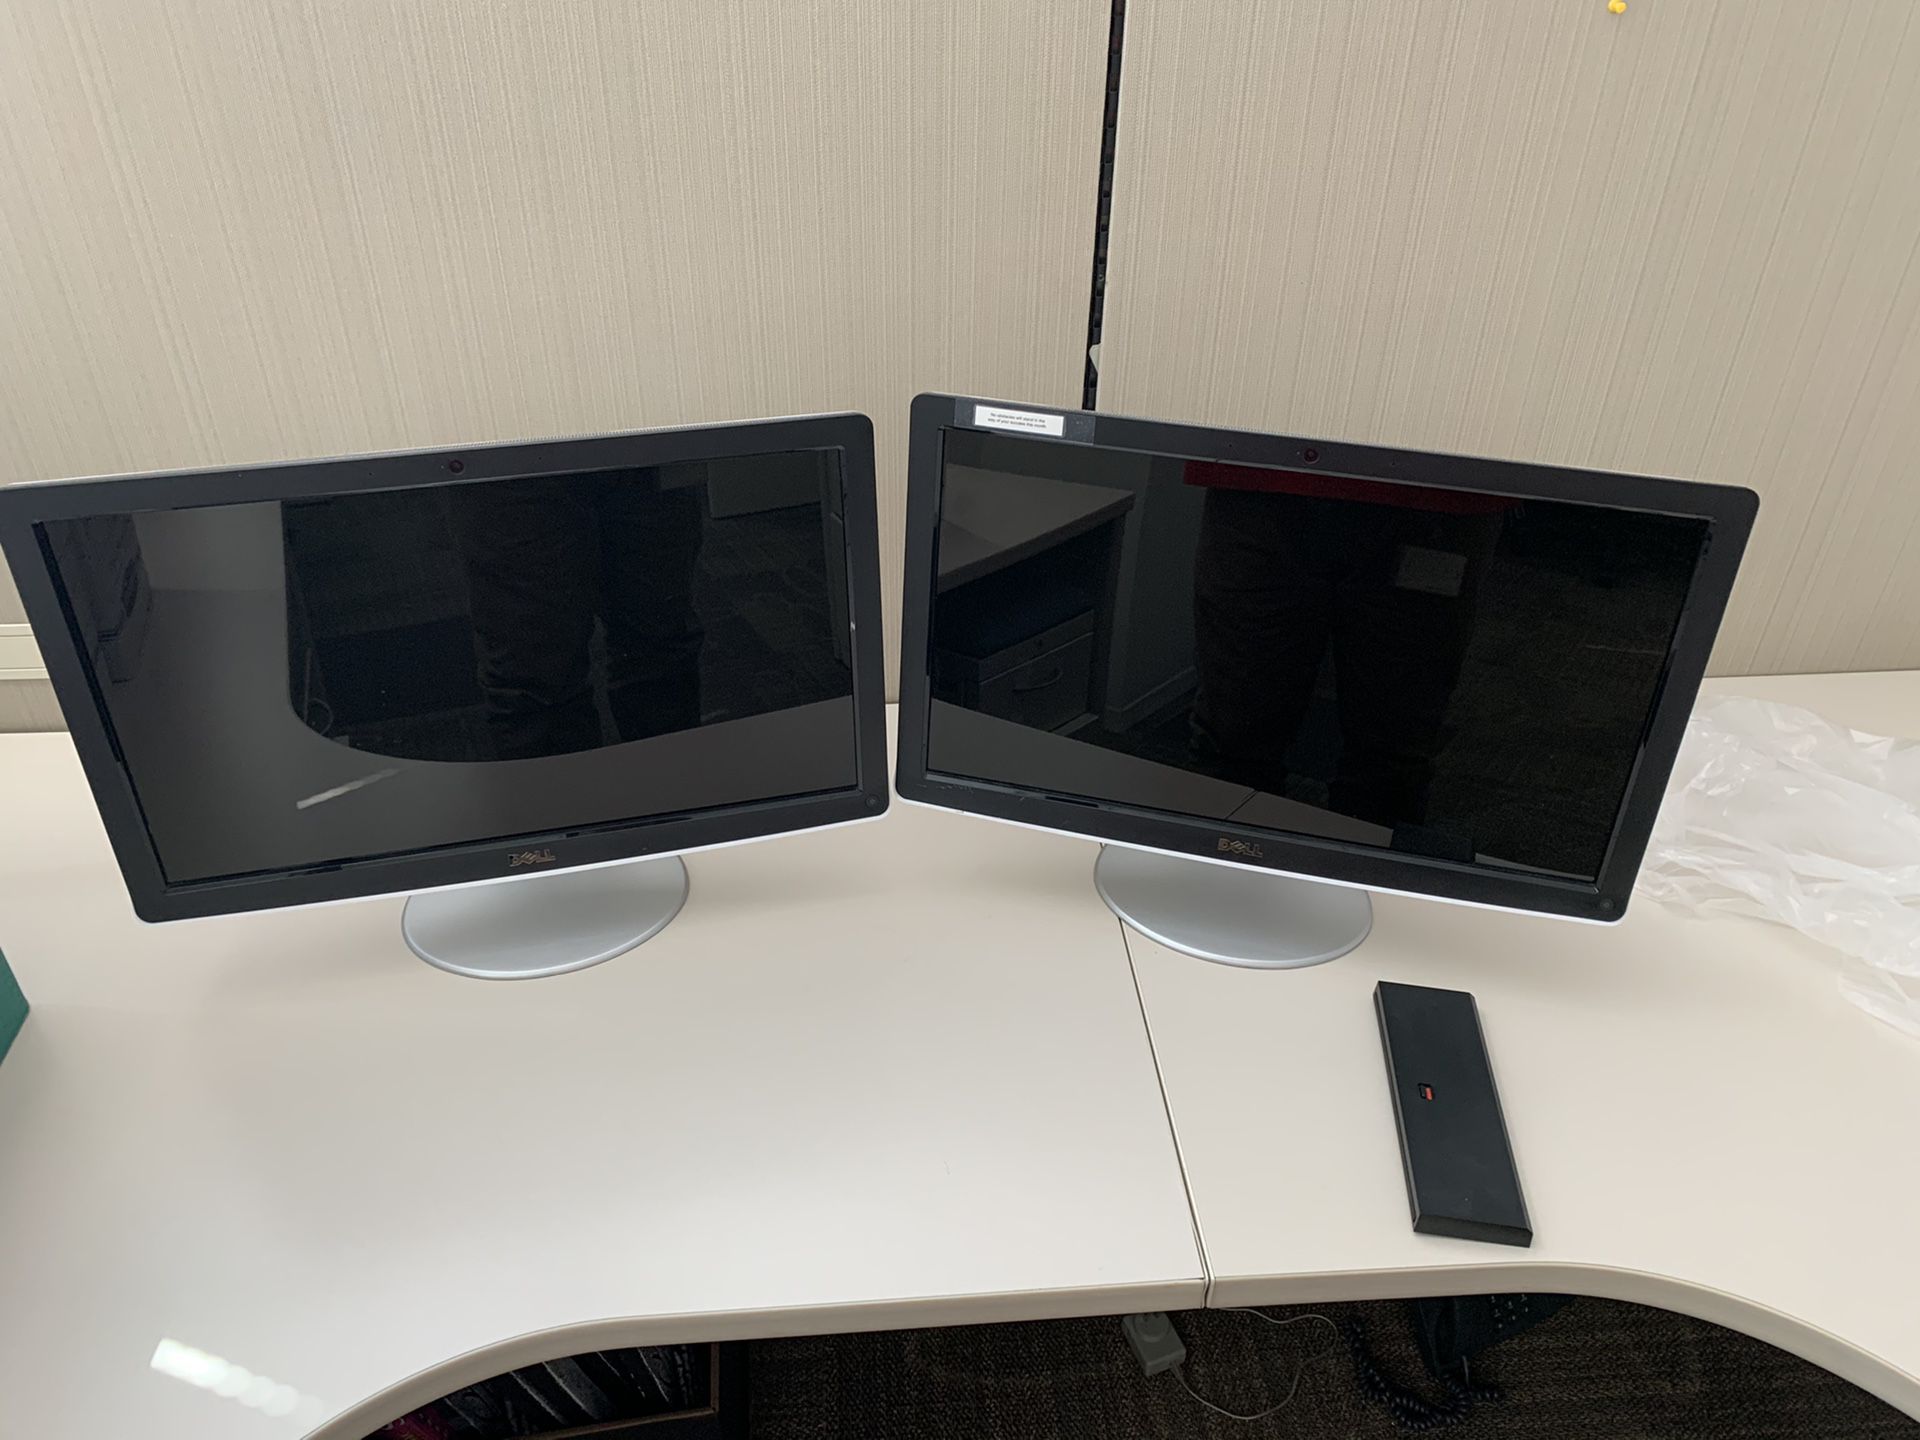 2 Dell 22 inch monitors